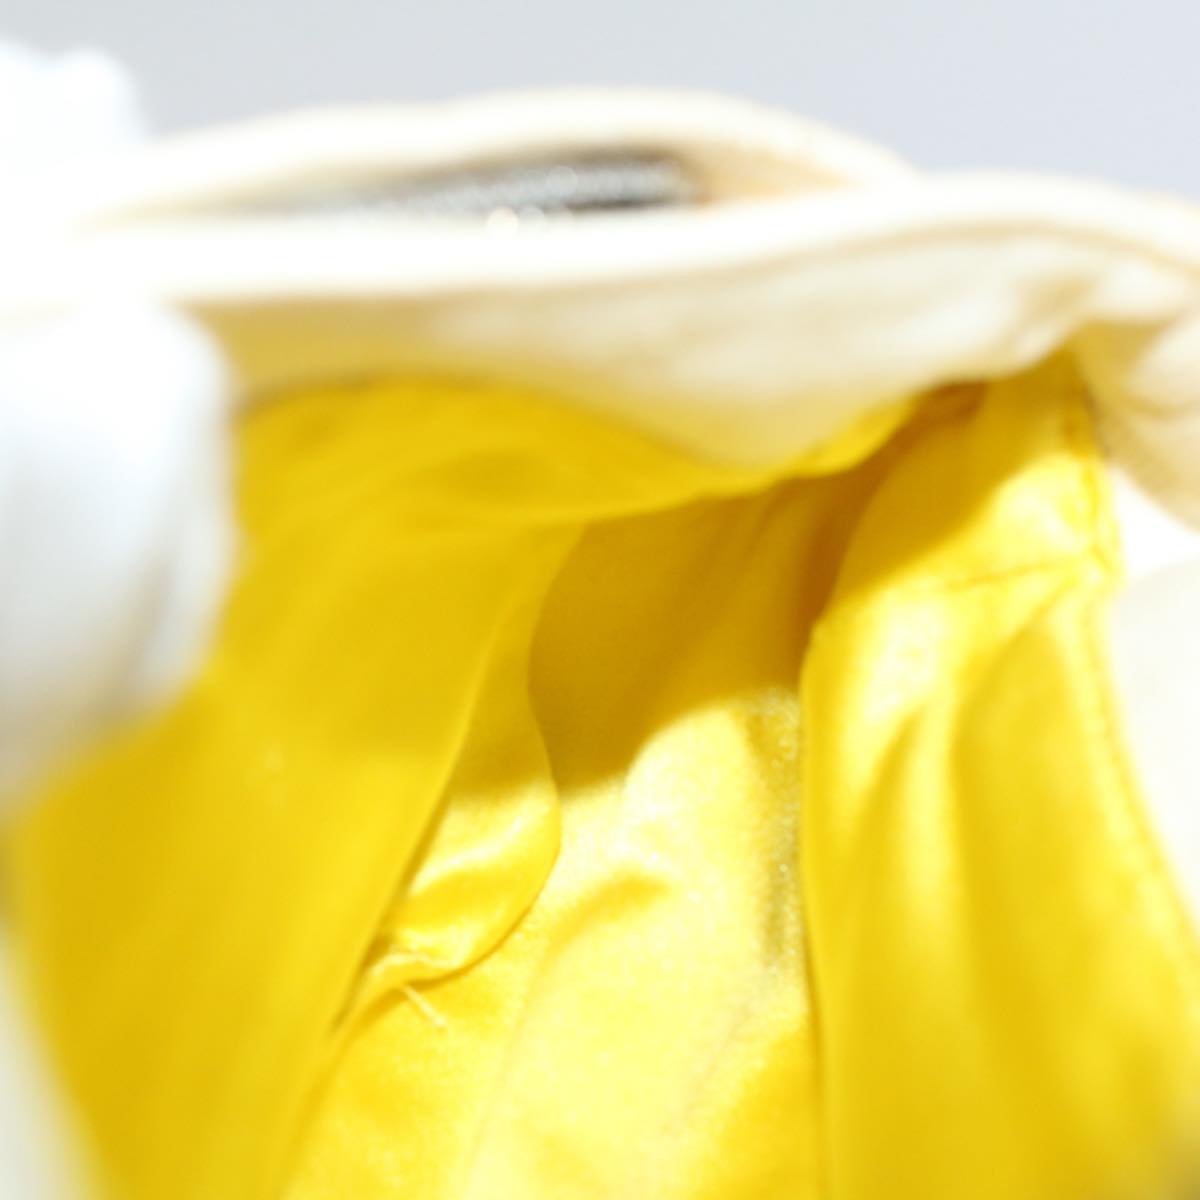 FENDI Mamma Baguette Shoulder Bag Canvas Beige Yellow Auth 54739